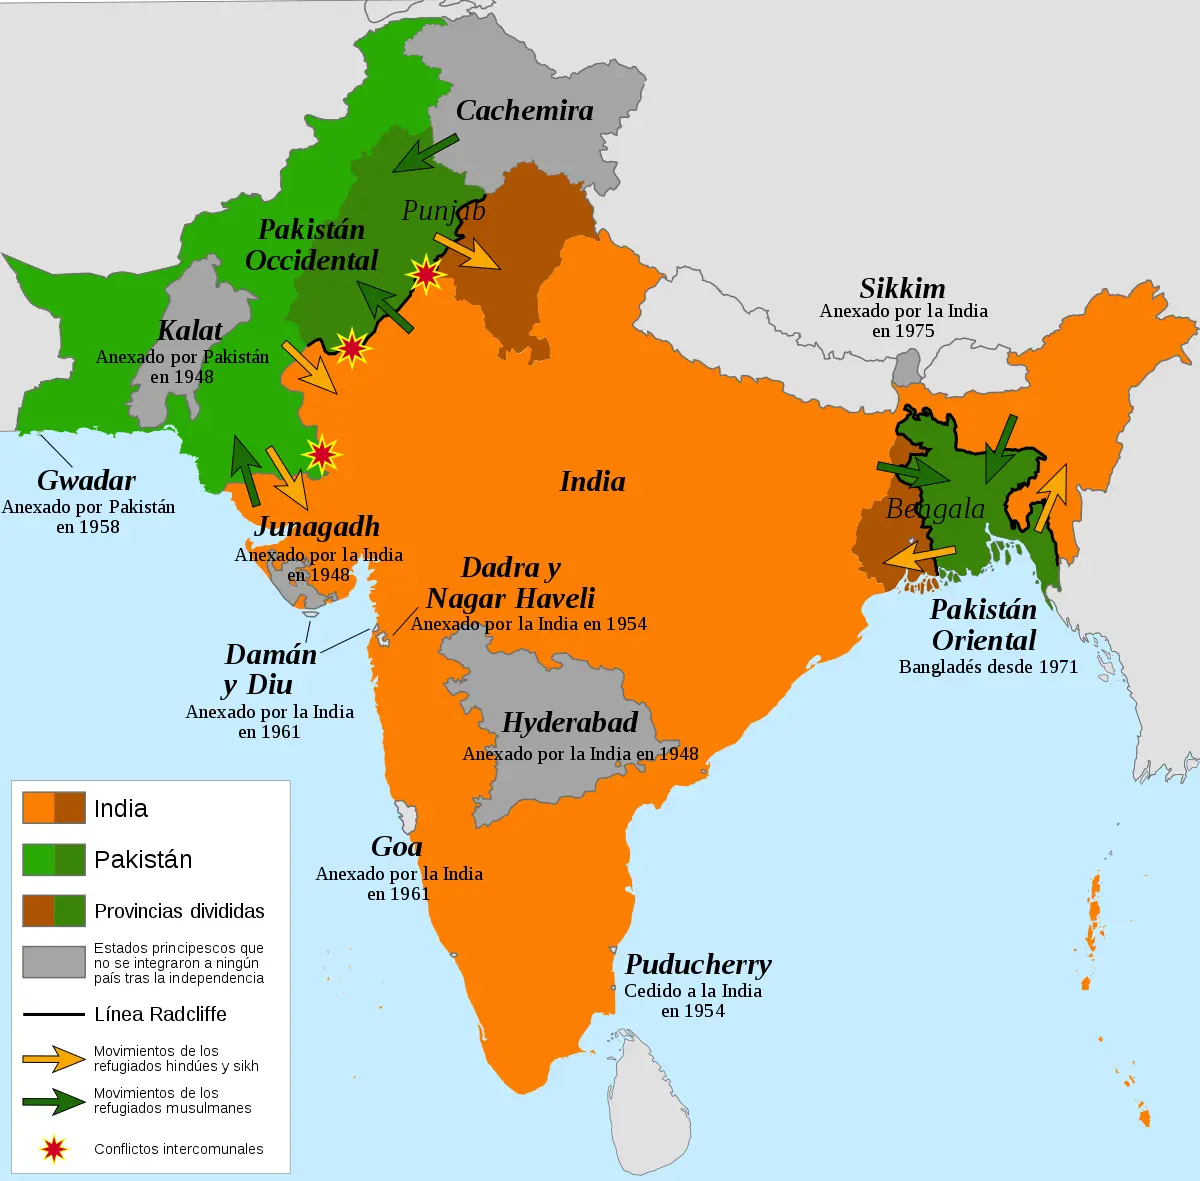 ataque inteligencia de paquistan a india - Qué pasó en India en 1947